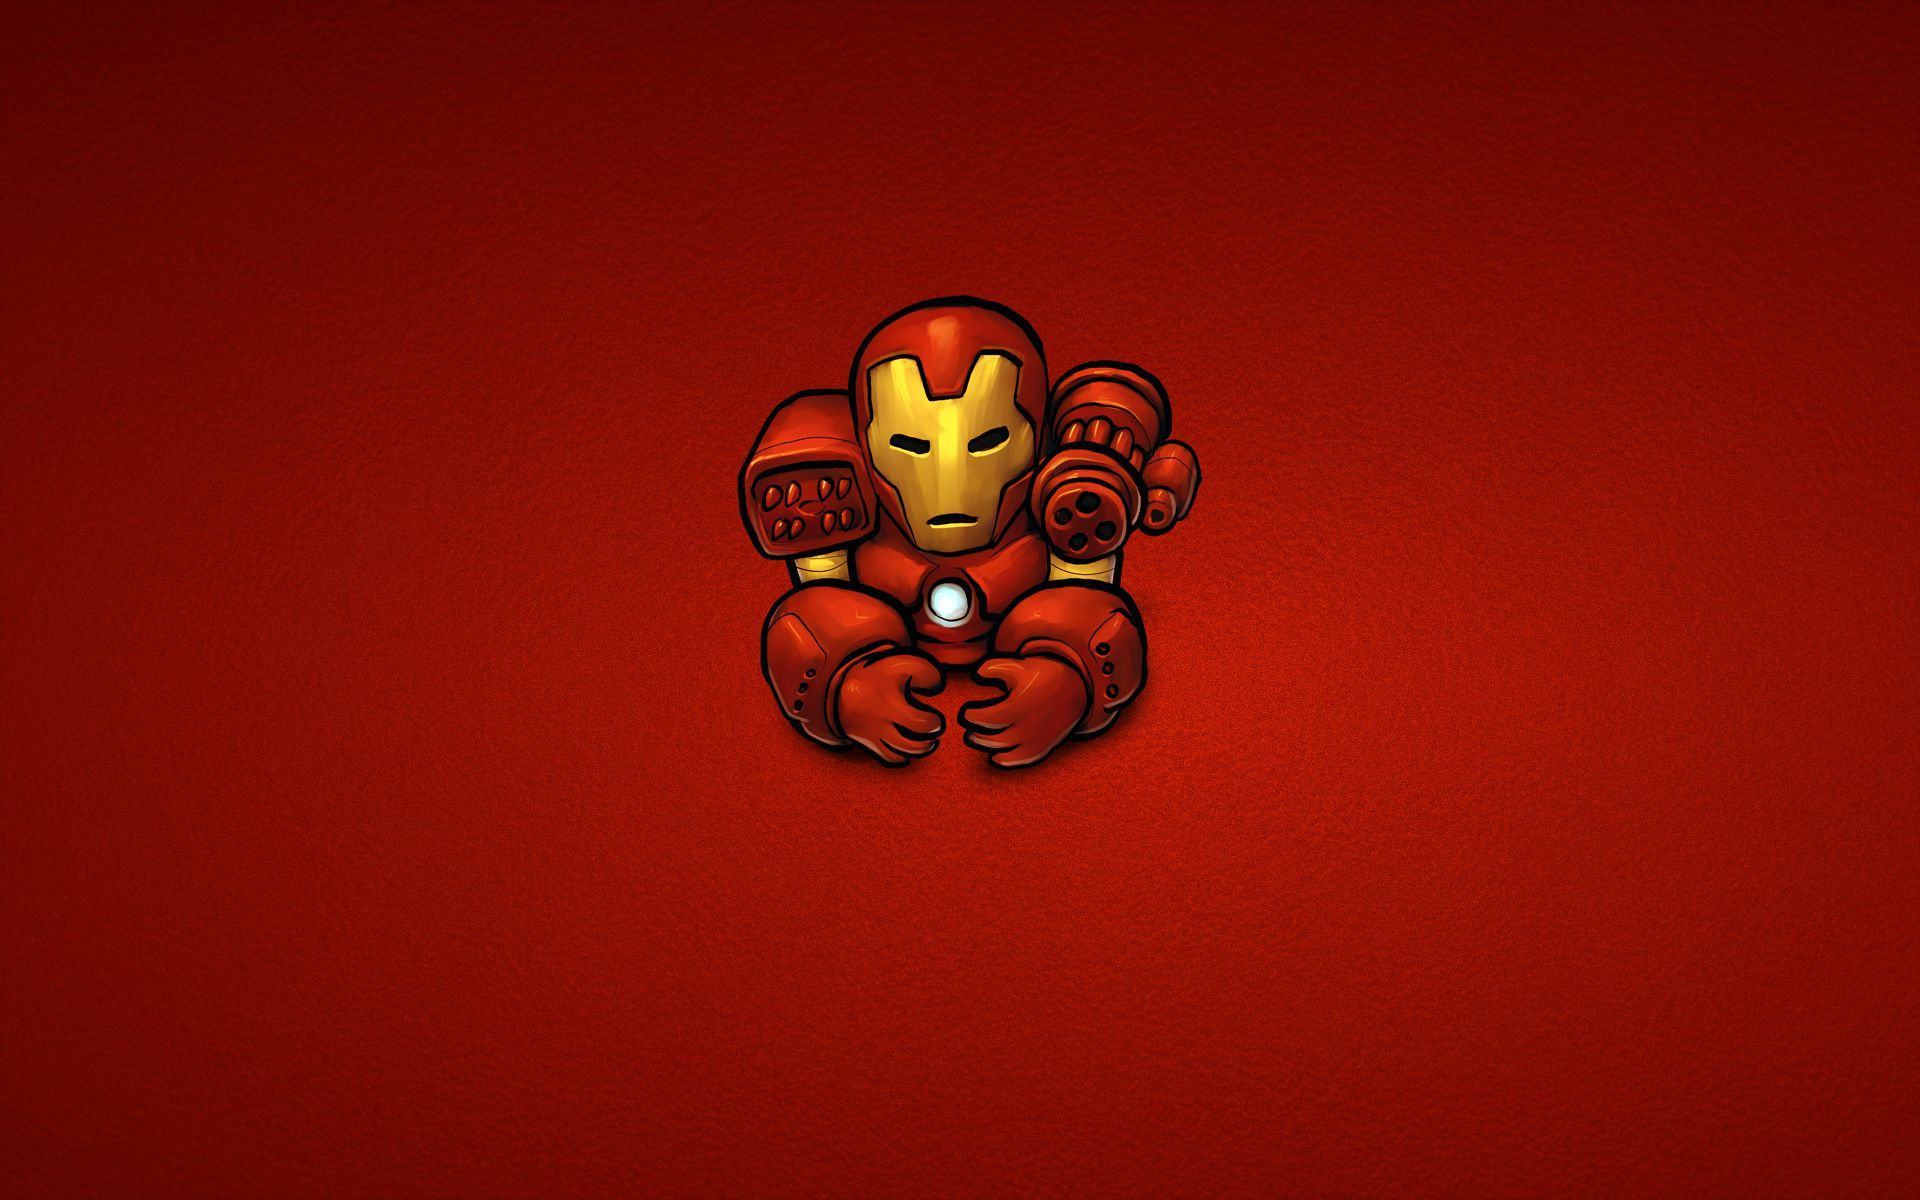 Ảnh chibi Iron Man đẹp